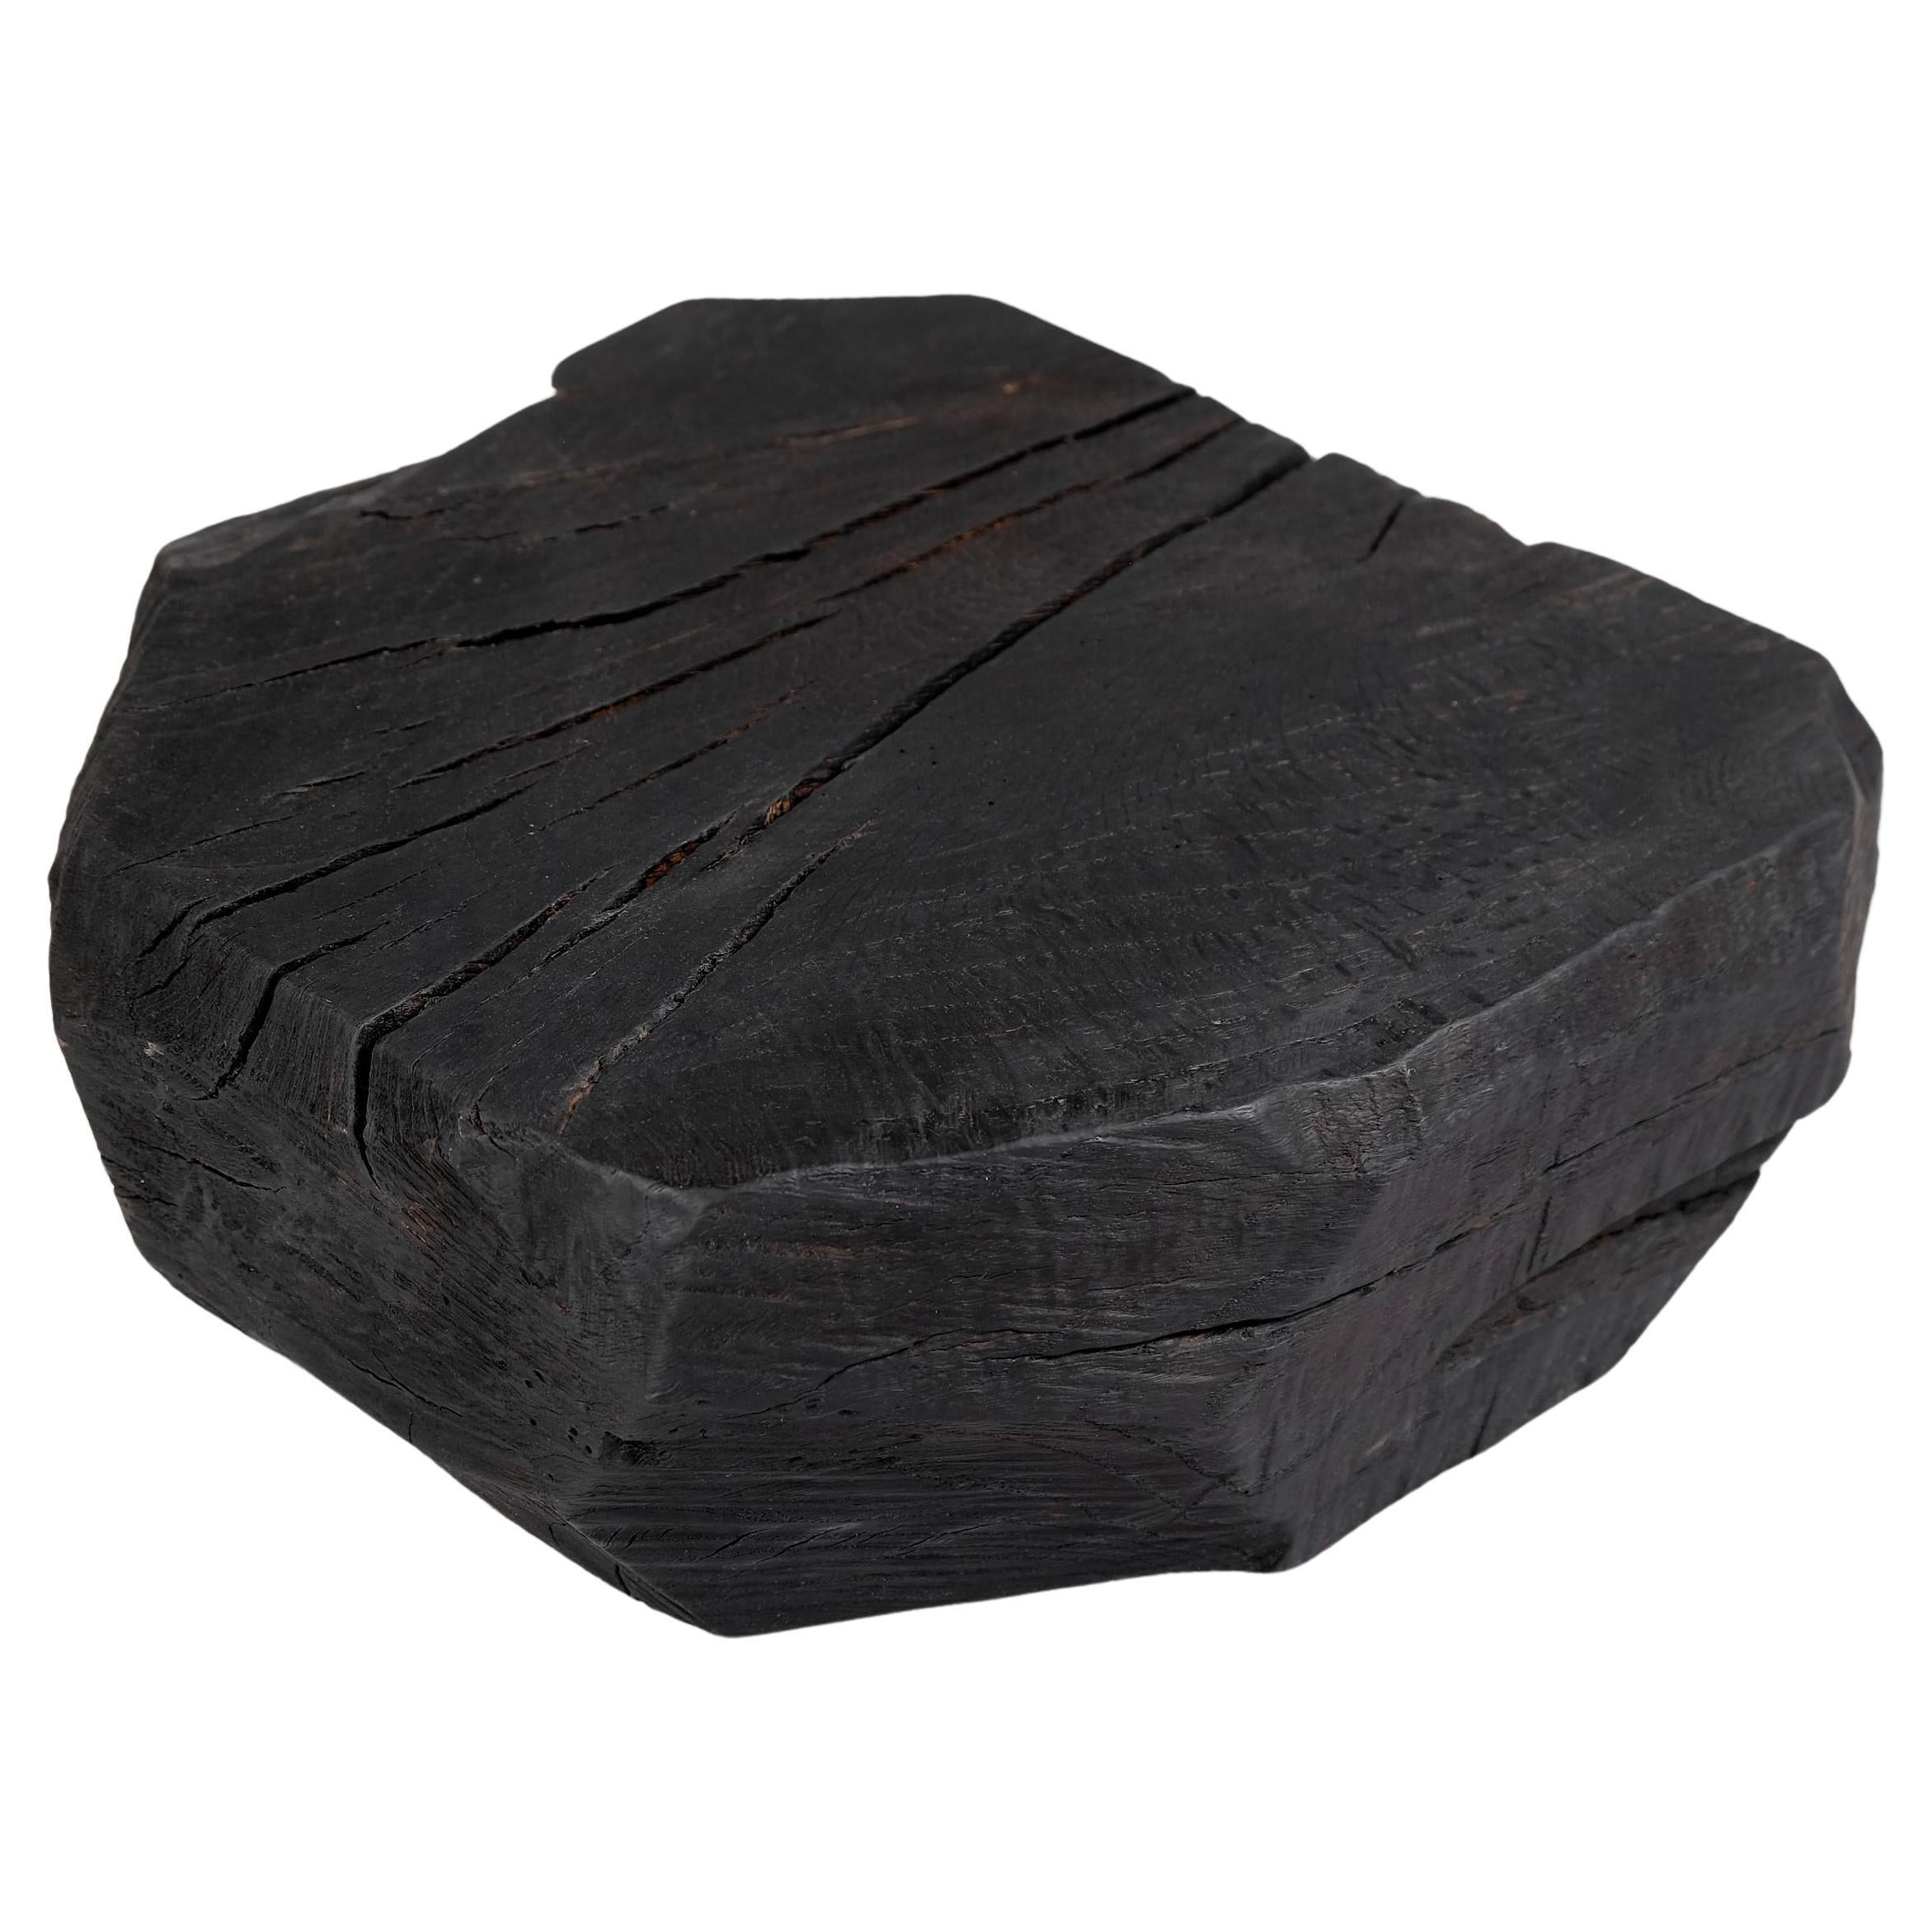 Solid Burnt Wood, Sculptural Stool/Side Table, Rock, Original Design, Logniture For Sale